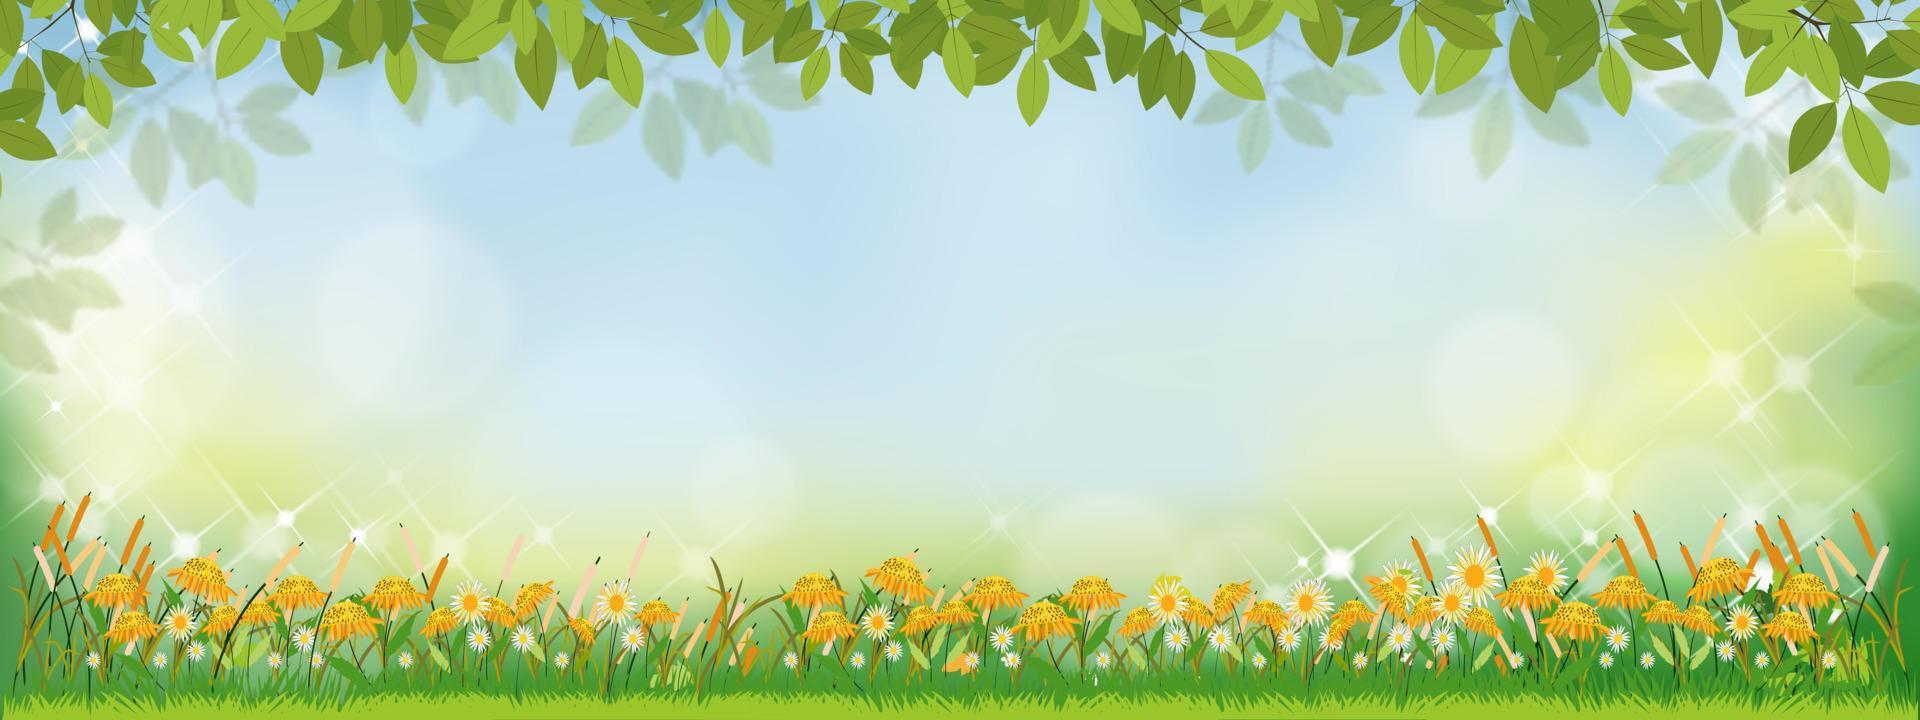 fondo de naturaleza de primavera vectorial con girasoles y campo de hierba verde, fondo de verano con hojas de ramas en el borde y efecto de luz de bokeh borroso. banner de plantilla para pascua, primavera, concepto de verano vector